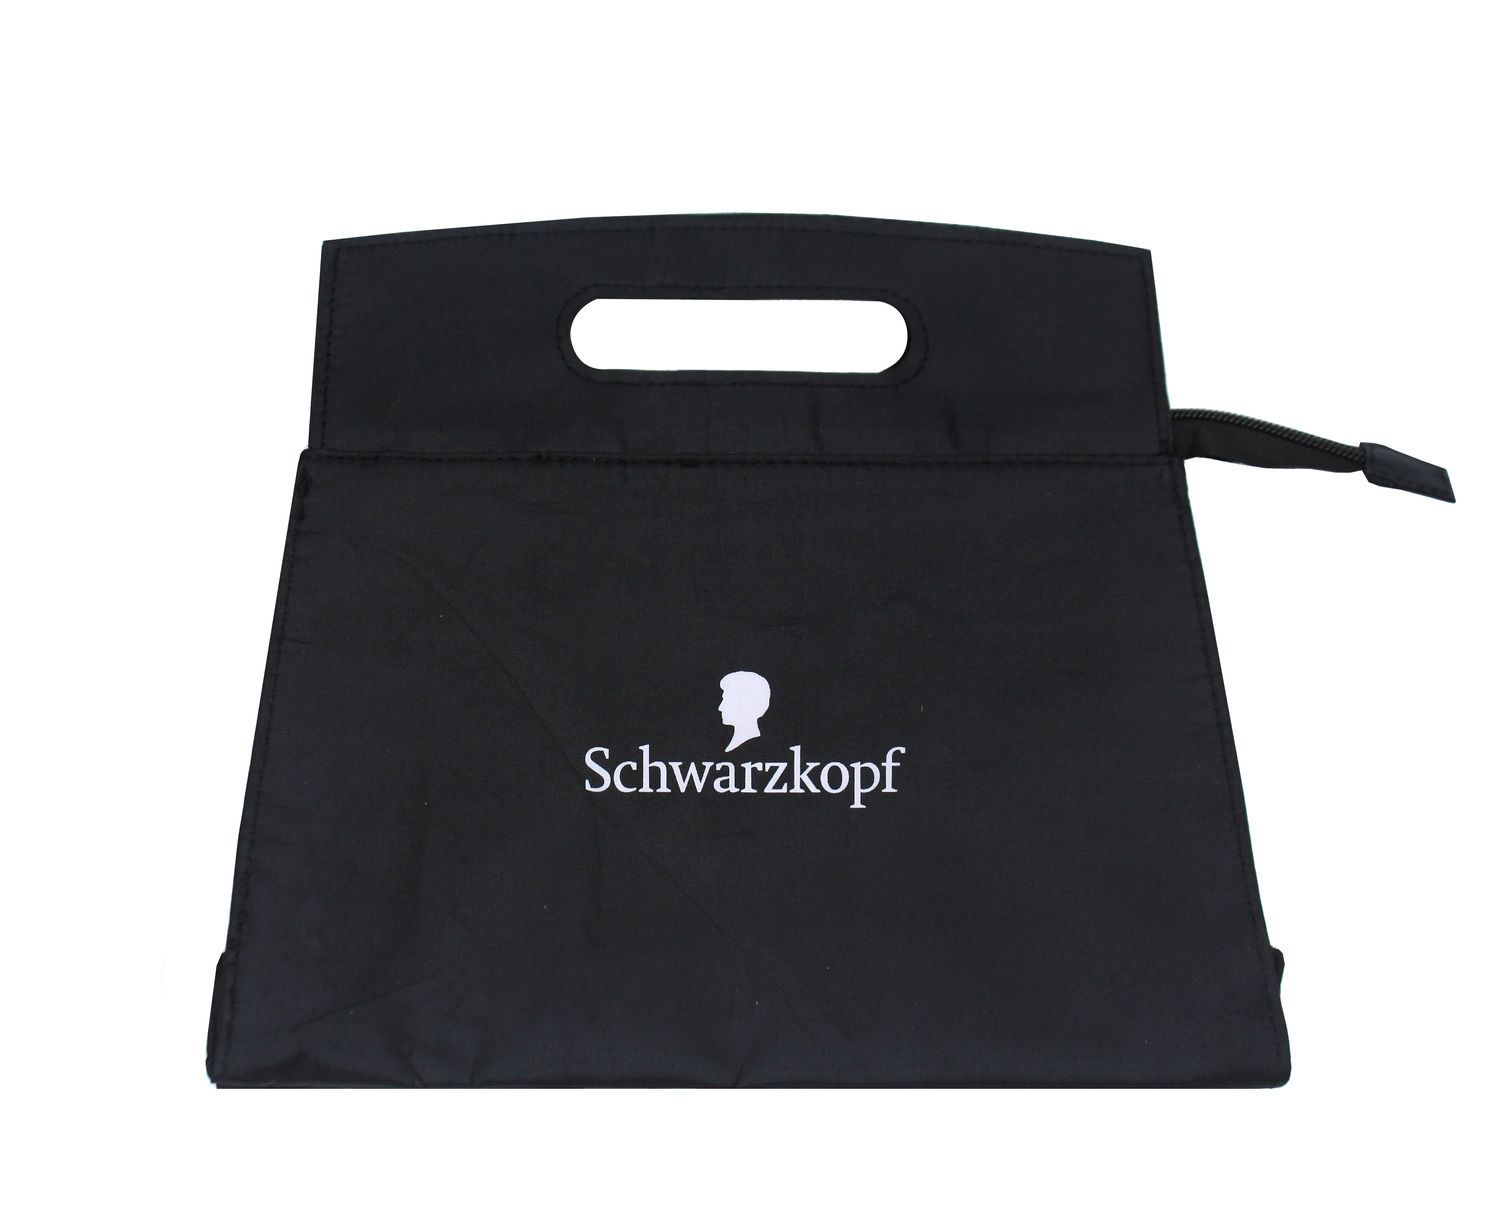 Buy Schwarzkopf Beauty bag - Purplle